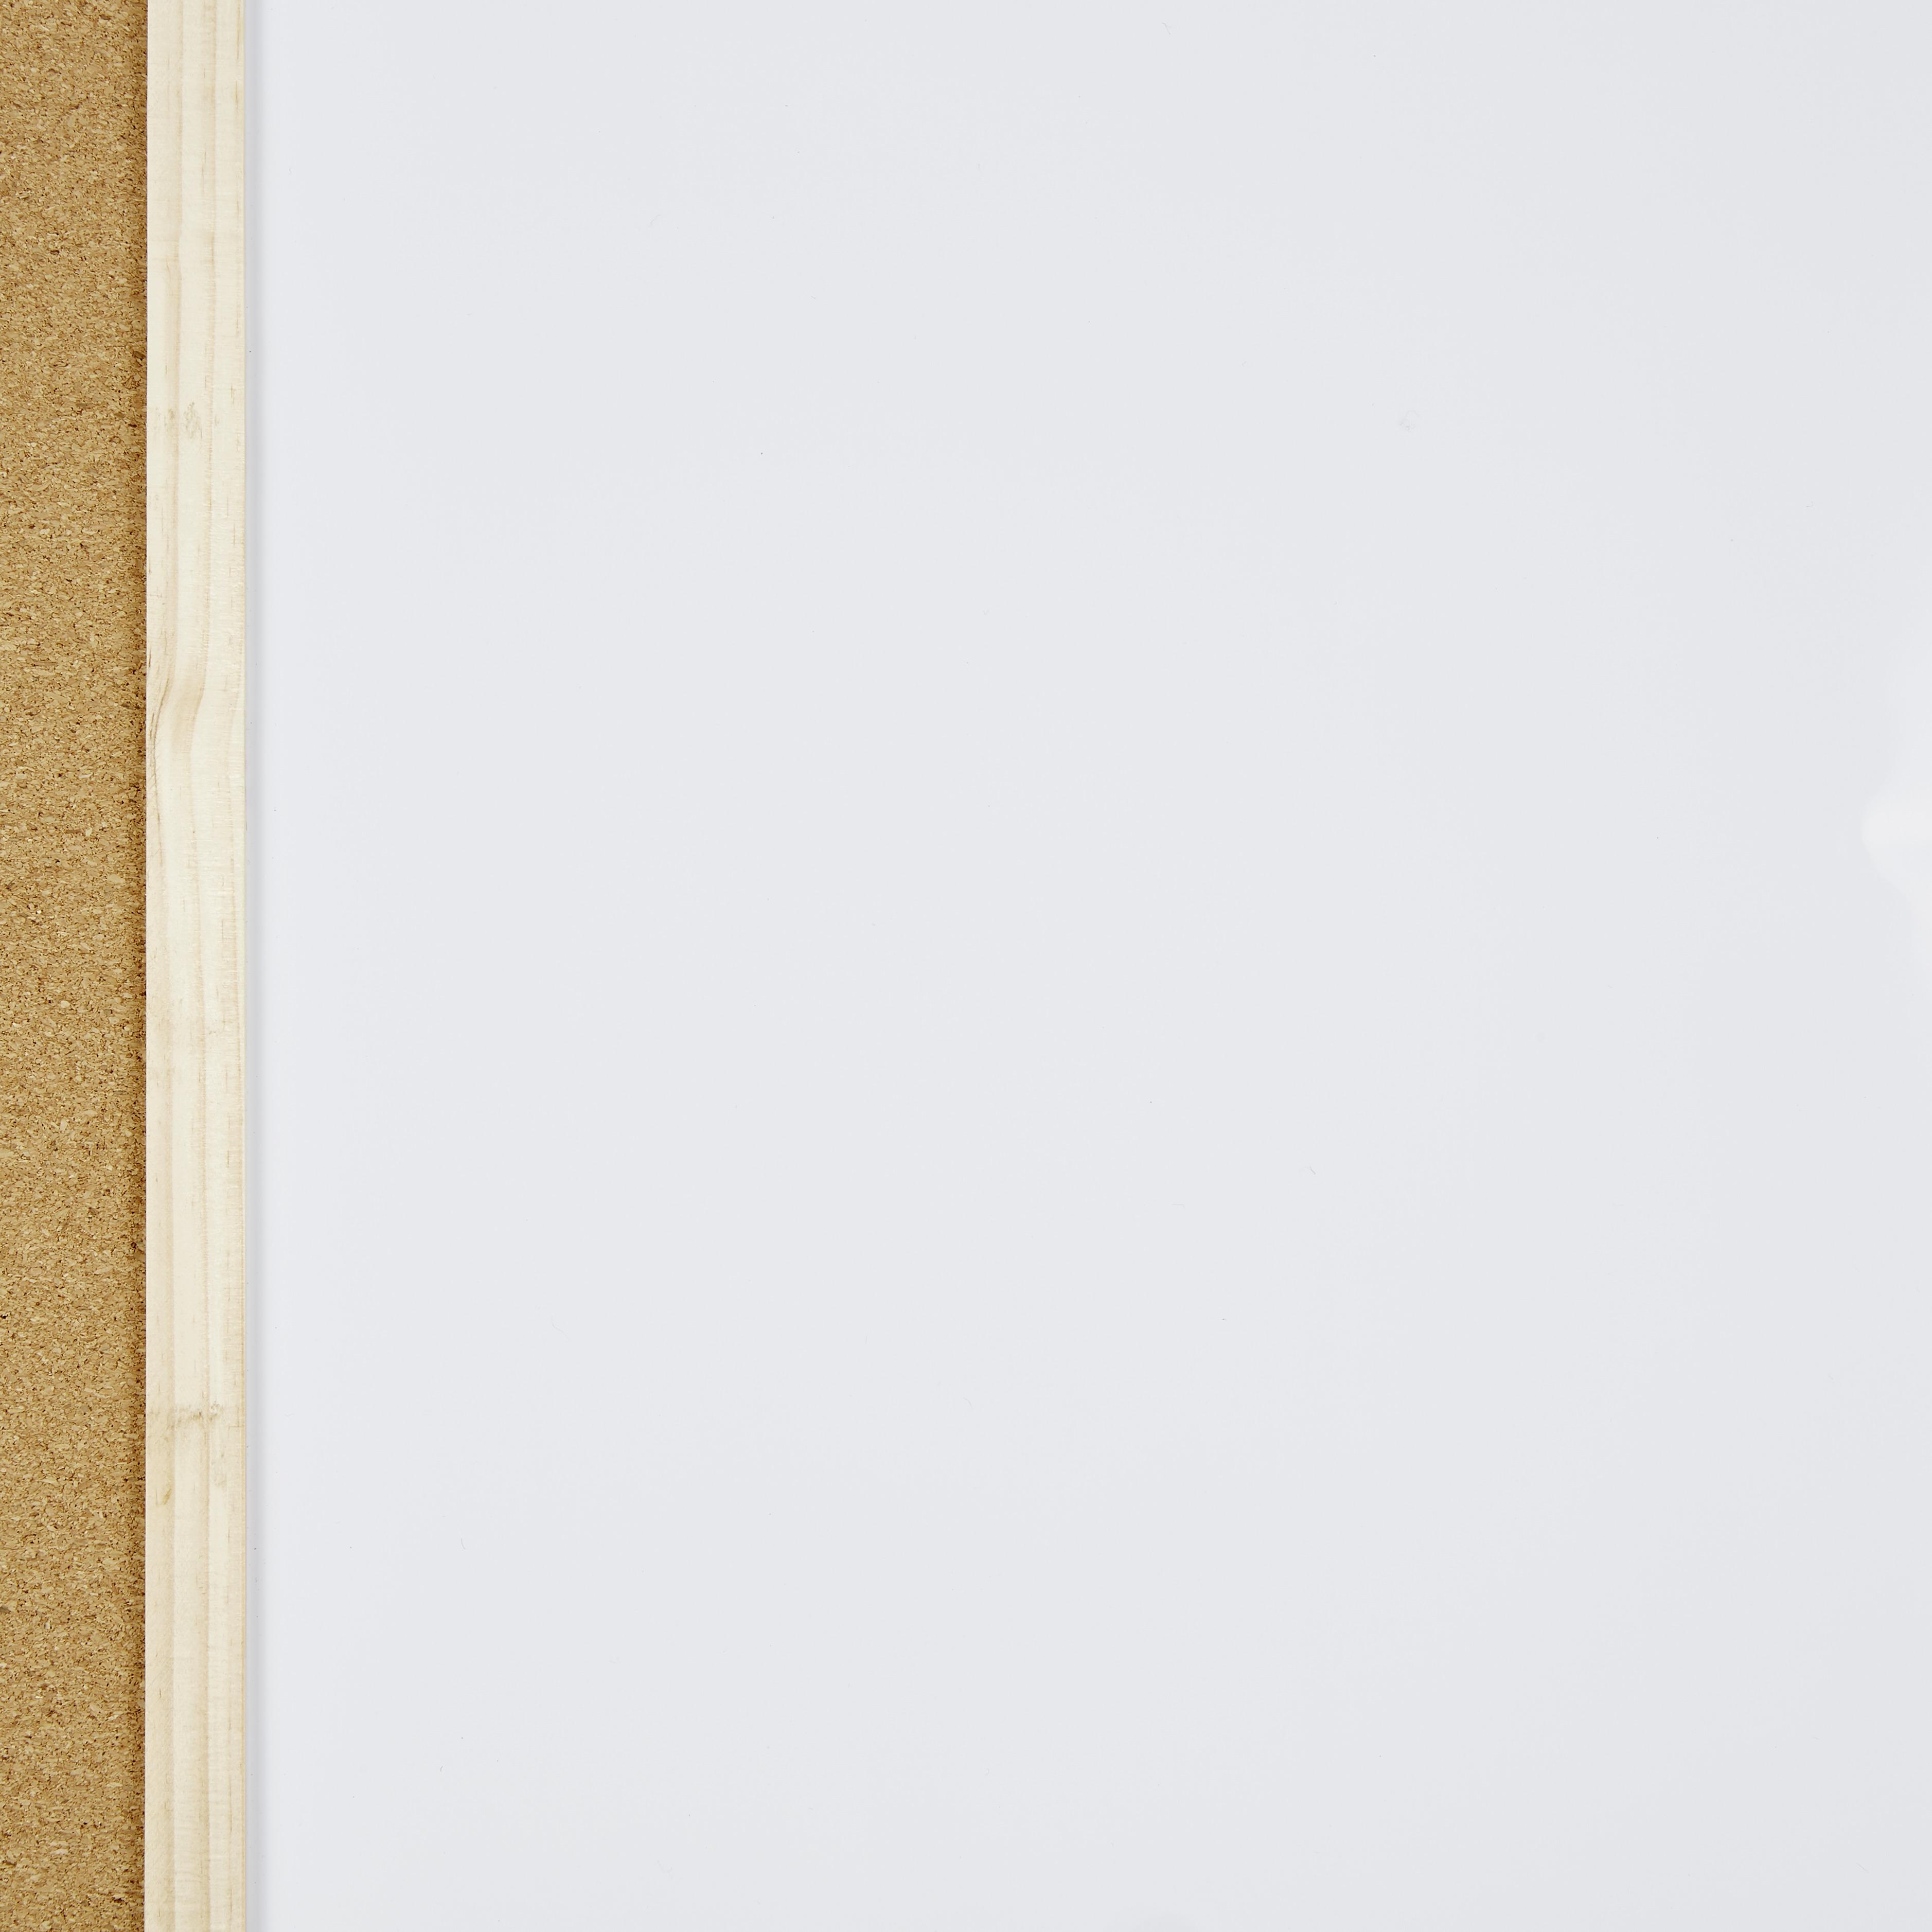 S SIENOC Whiteboard Kombinations notizbrett Pinnwand Magnetwand mit Alurahmen Magnetisch Whiteboard und Magnettafel Weiß lackiert 70x50cm 